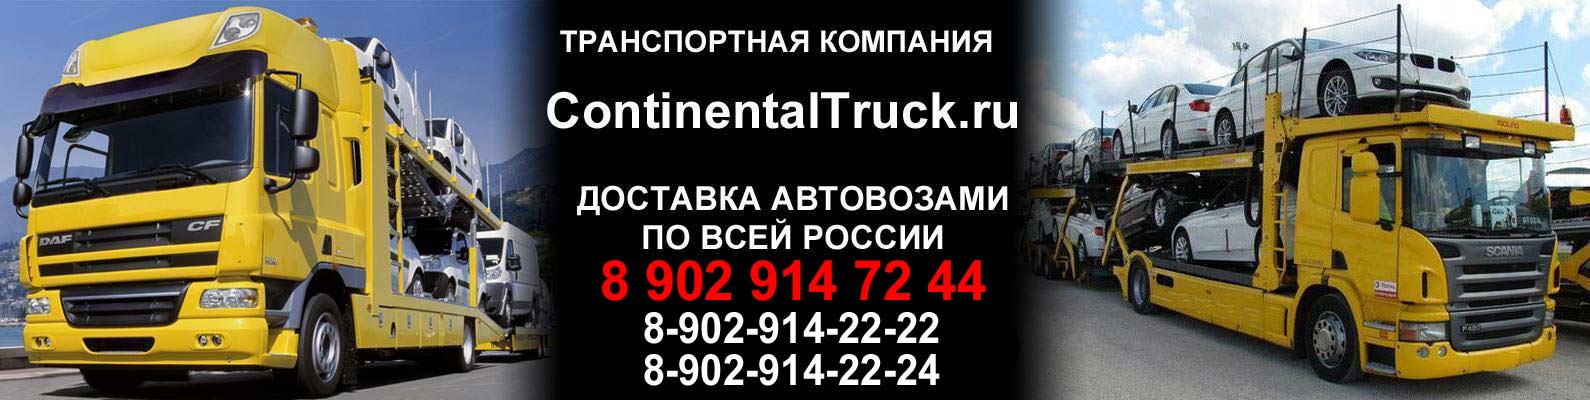 ContinentalTruck.ru - Доставка Автовозами по России